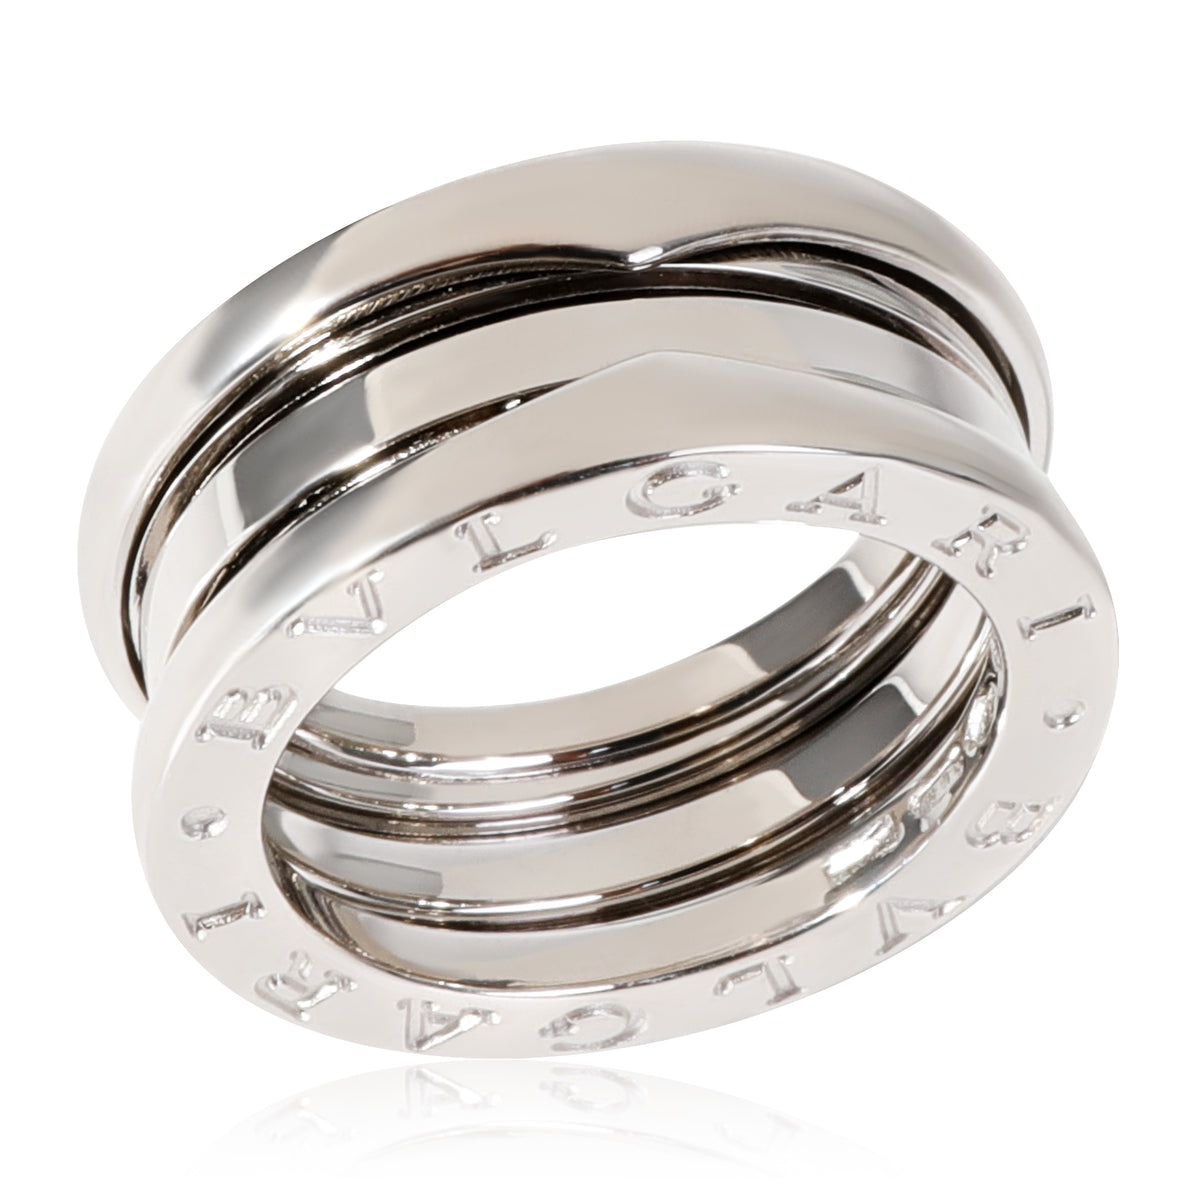 BVLGARI B.zero1 3-Band Ring in 18k White Gold